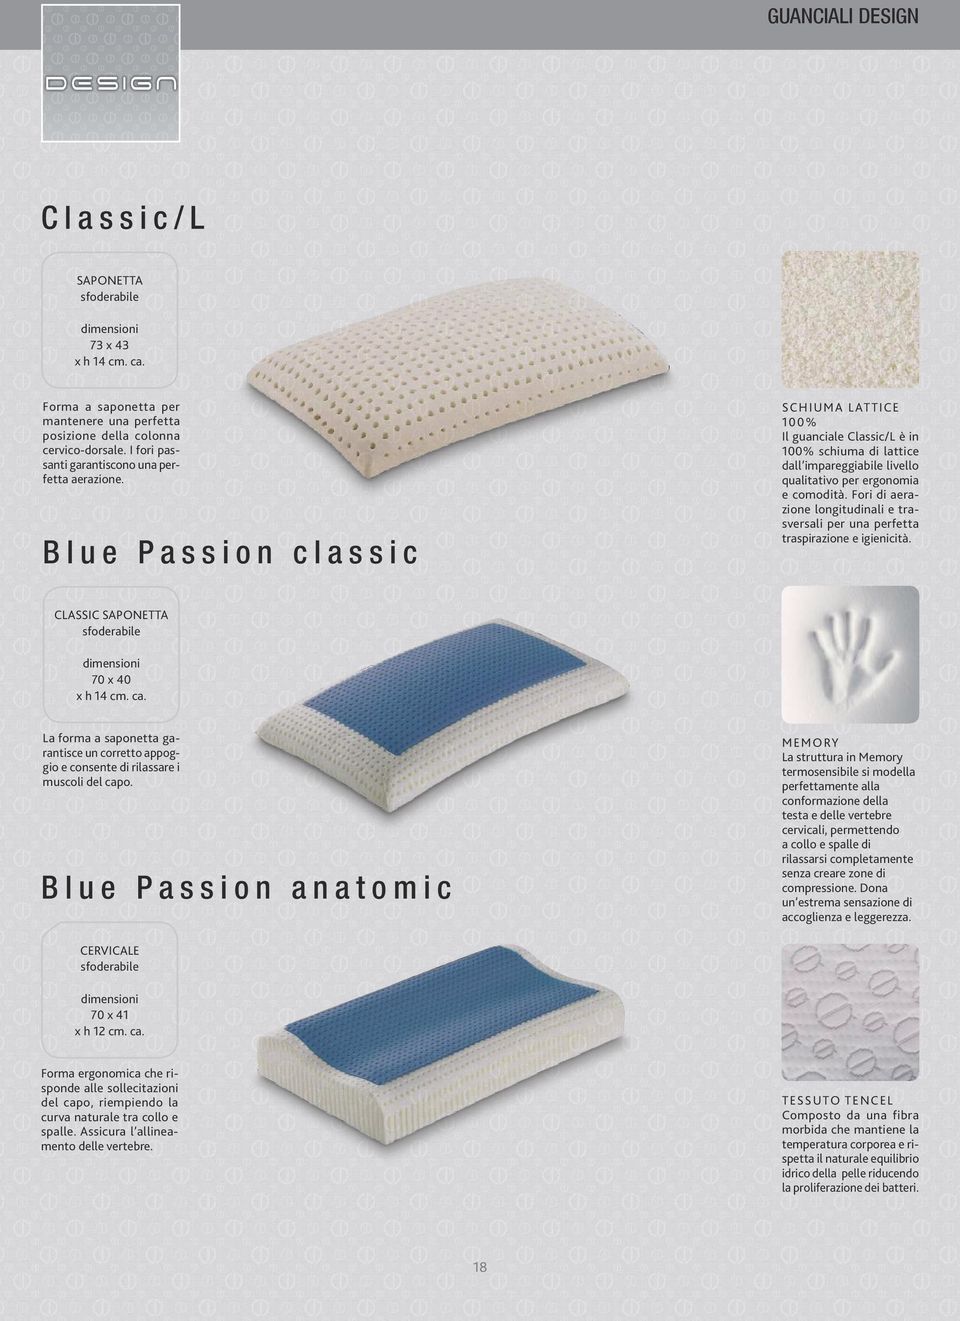 Blue Passion classic SCHIUMA LATTICE 100% Il guanciale Classic/L è in 100% schiuma di lattice dall impareggiabile livello qualitativo per ergonomia e comodità.